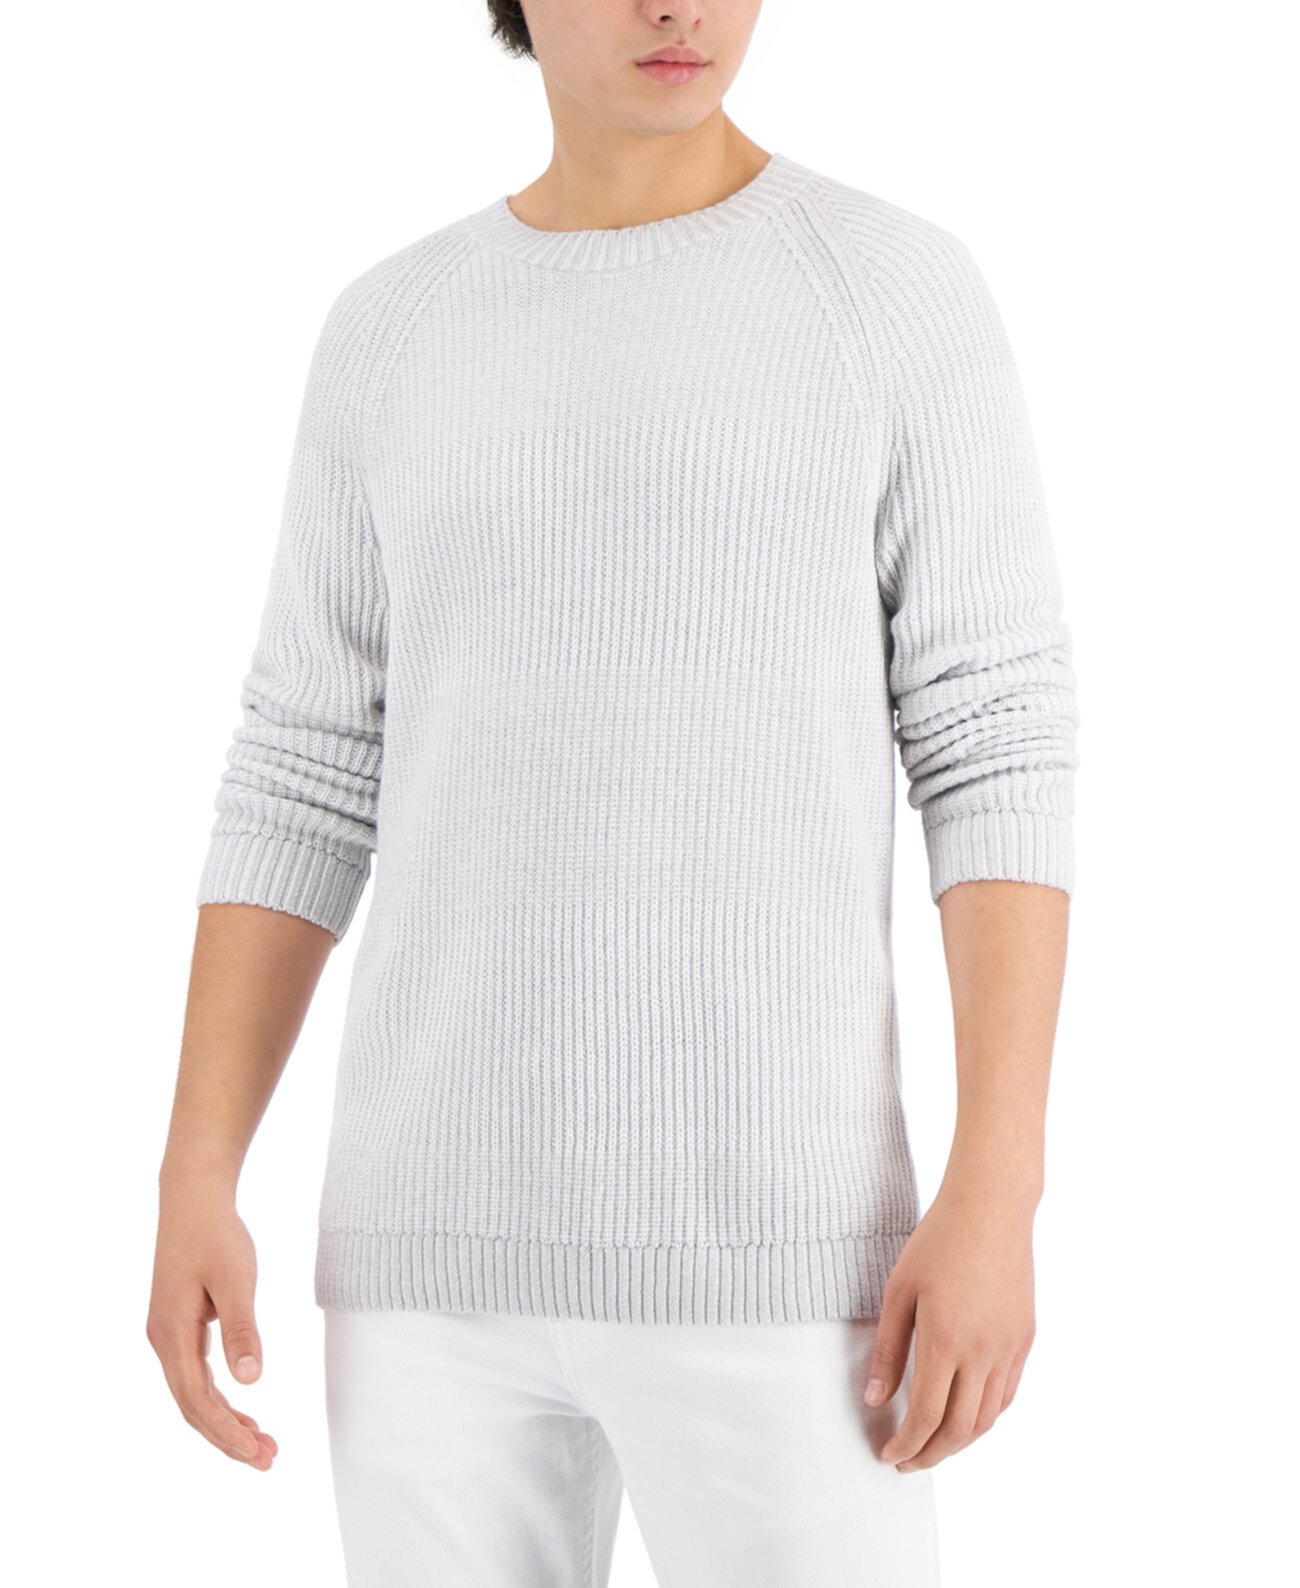 Мужской плетеный свитер с круглым вырезом, созданный для Macy's I.N.C. International Concepts